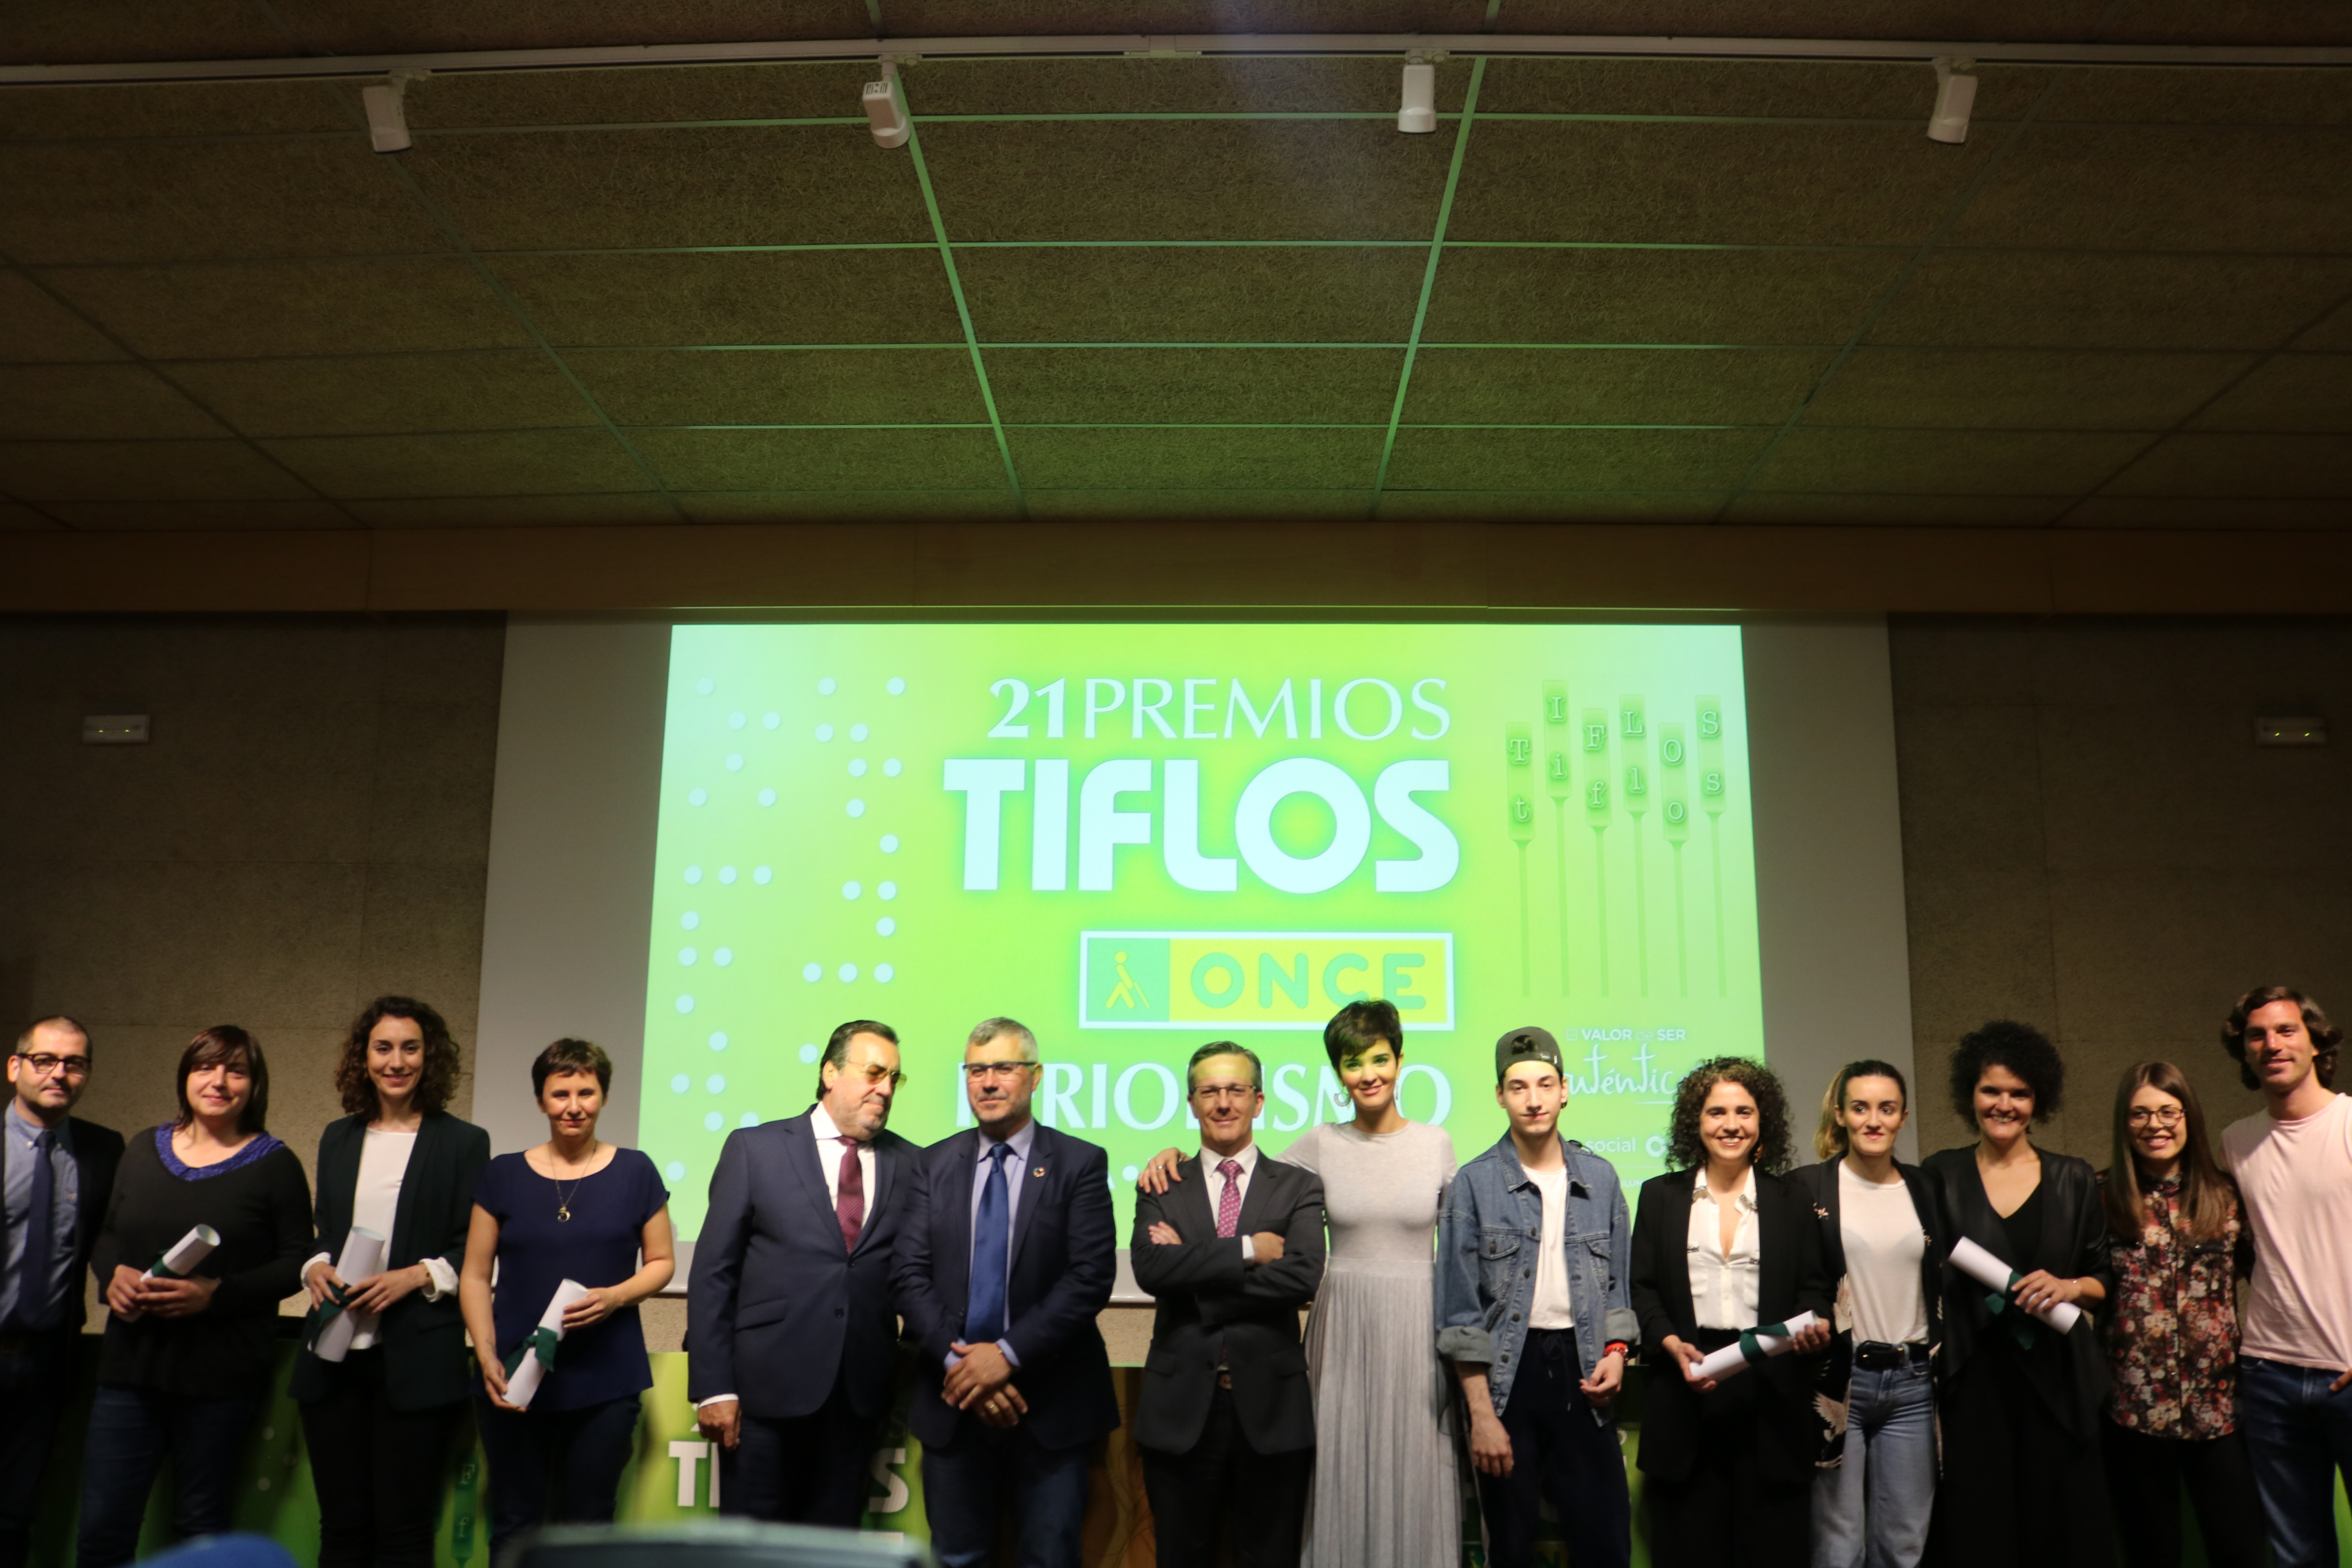 La Facultad acoge los Premios Tiflos de Periodismo 2019 - 1